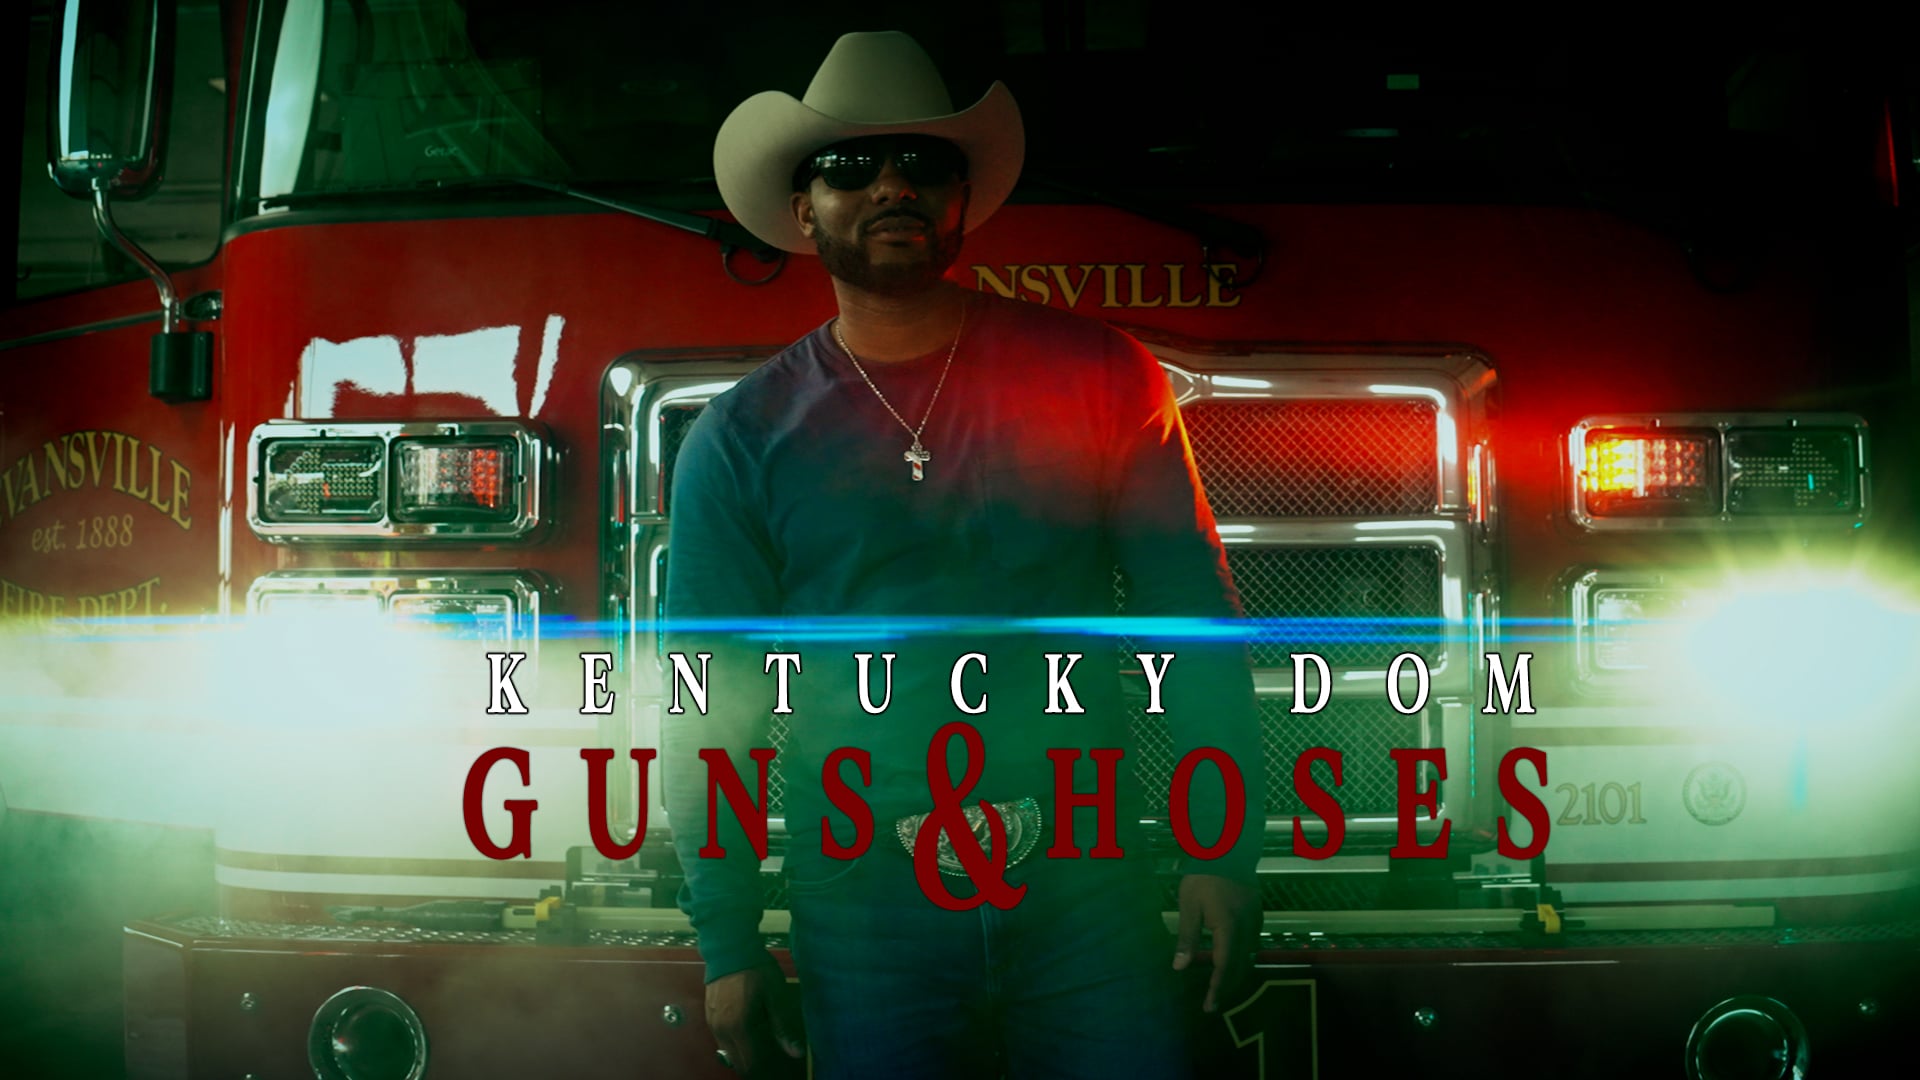 Kentucky Dom - Guns & Hoses (Official Video) (2021)